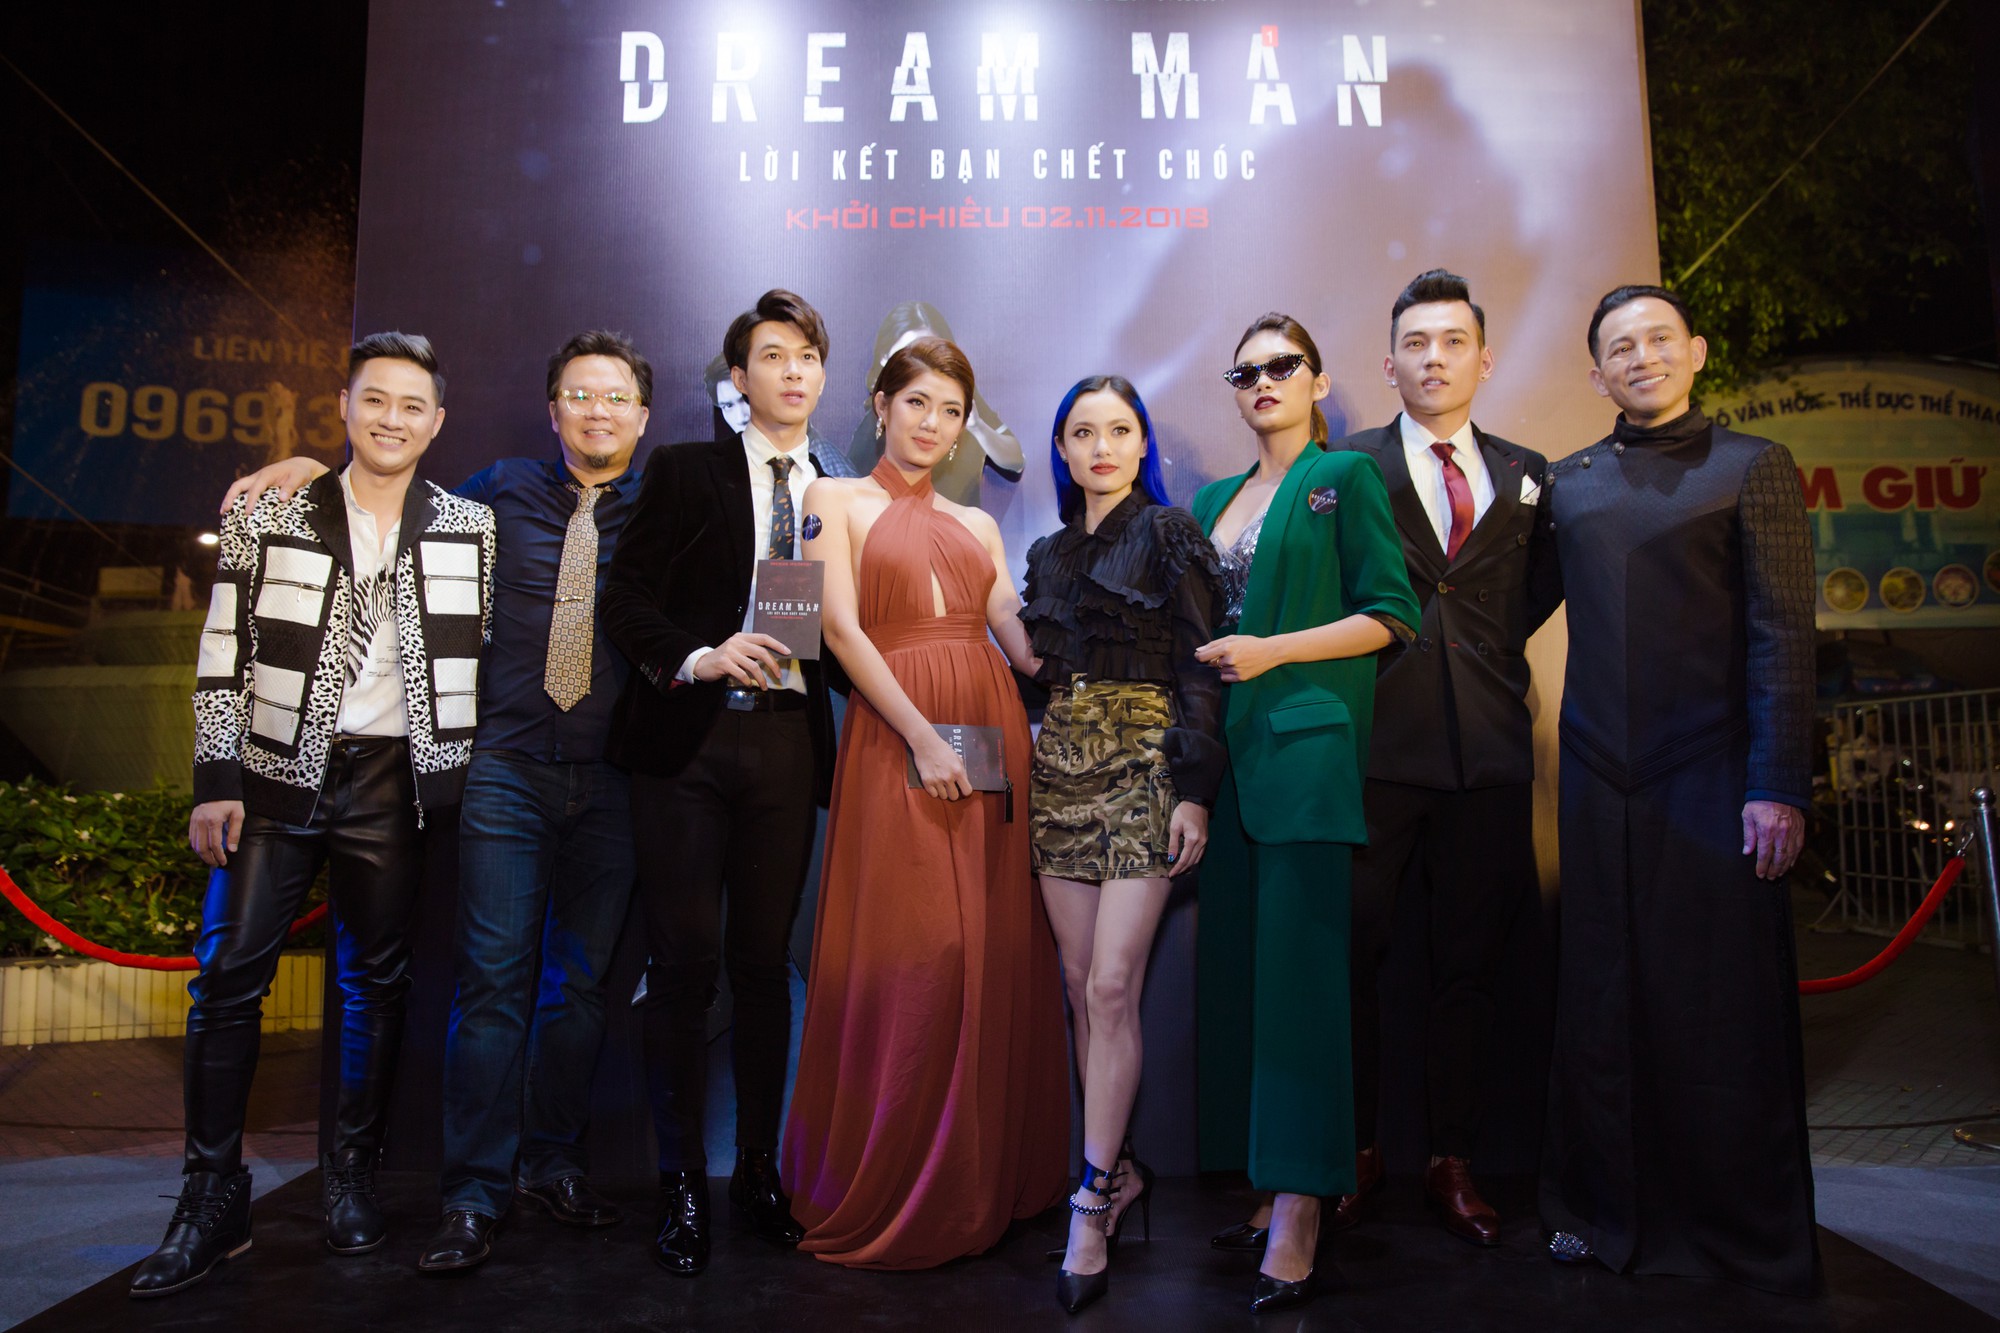 Thanh Tú lạnh lùng giữa dàn sao Việt tại buổi ra mắt phim Dream Man - Ảnh 8.